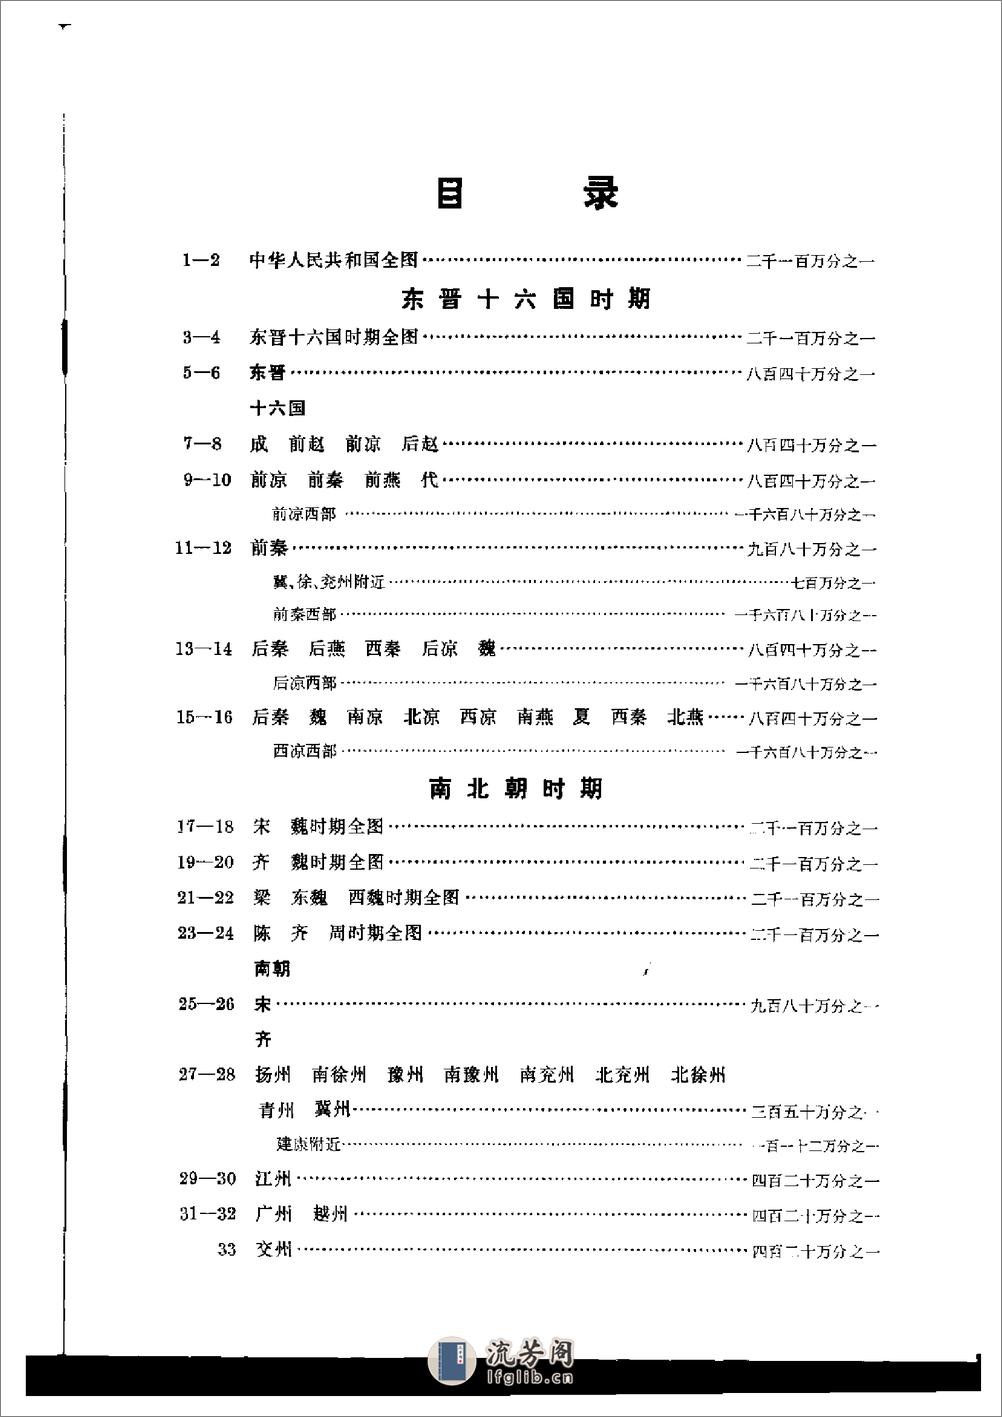 中国历史地图集_第四册(南北朝) - 第8页预览图